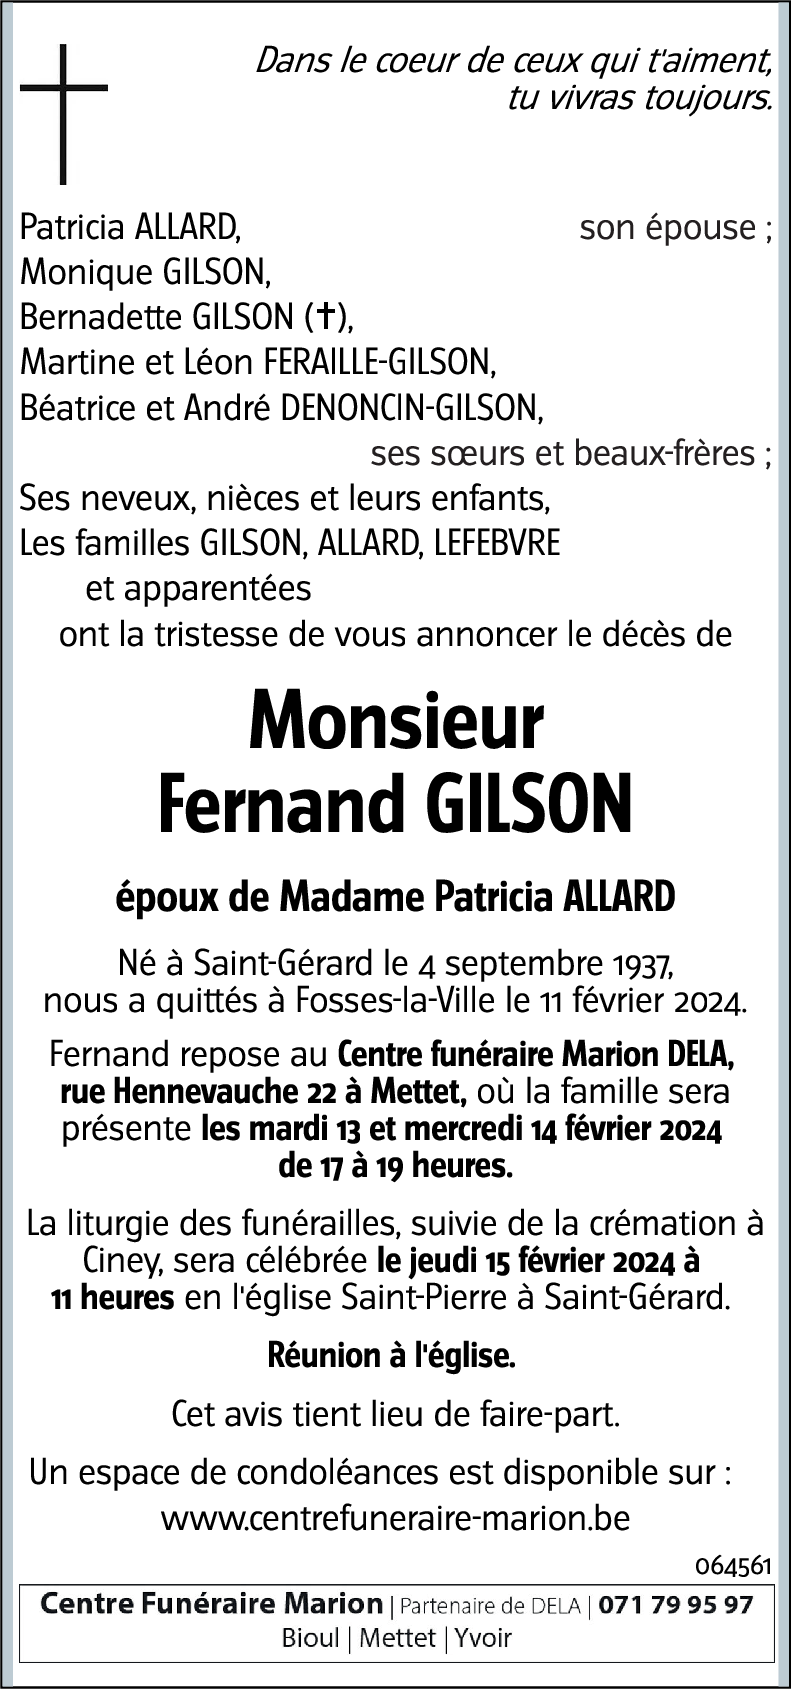 Fernand GILSON